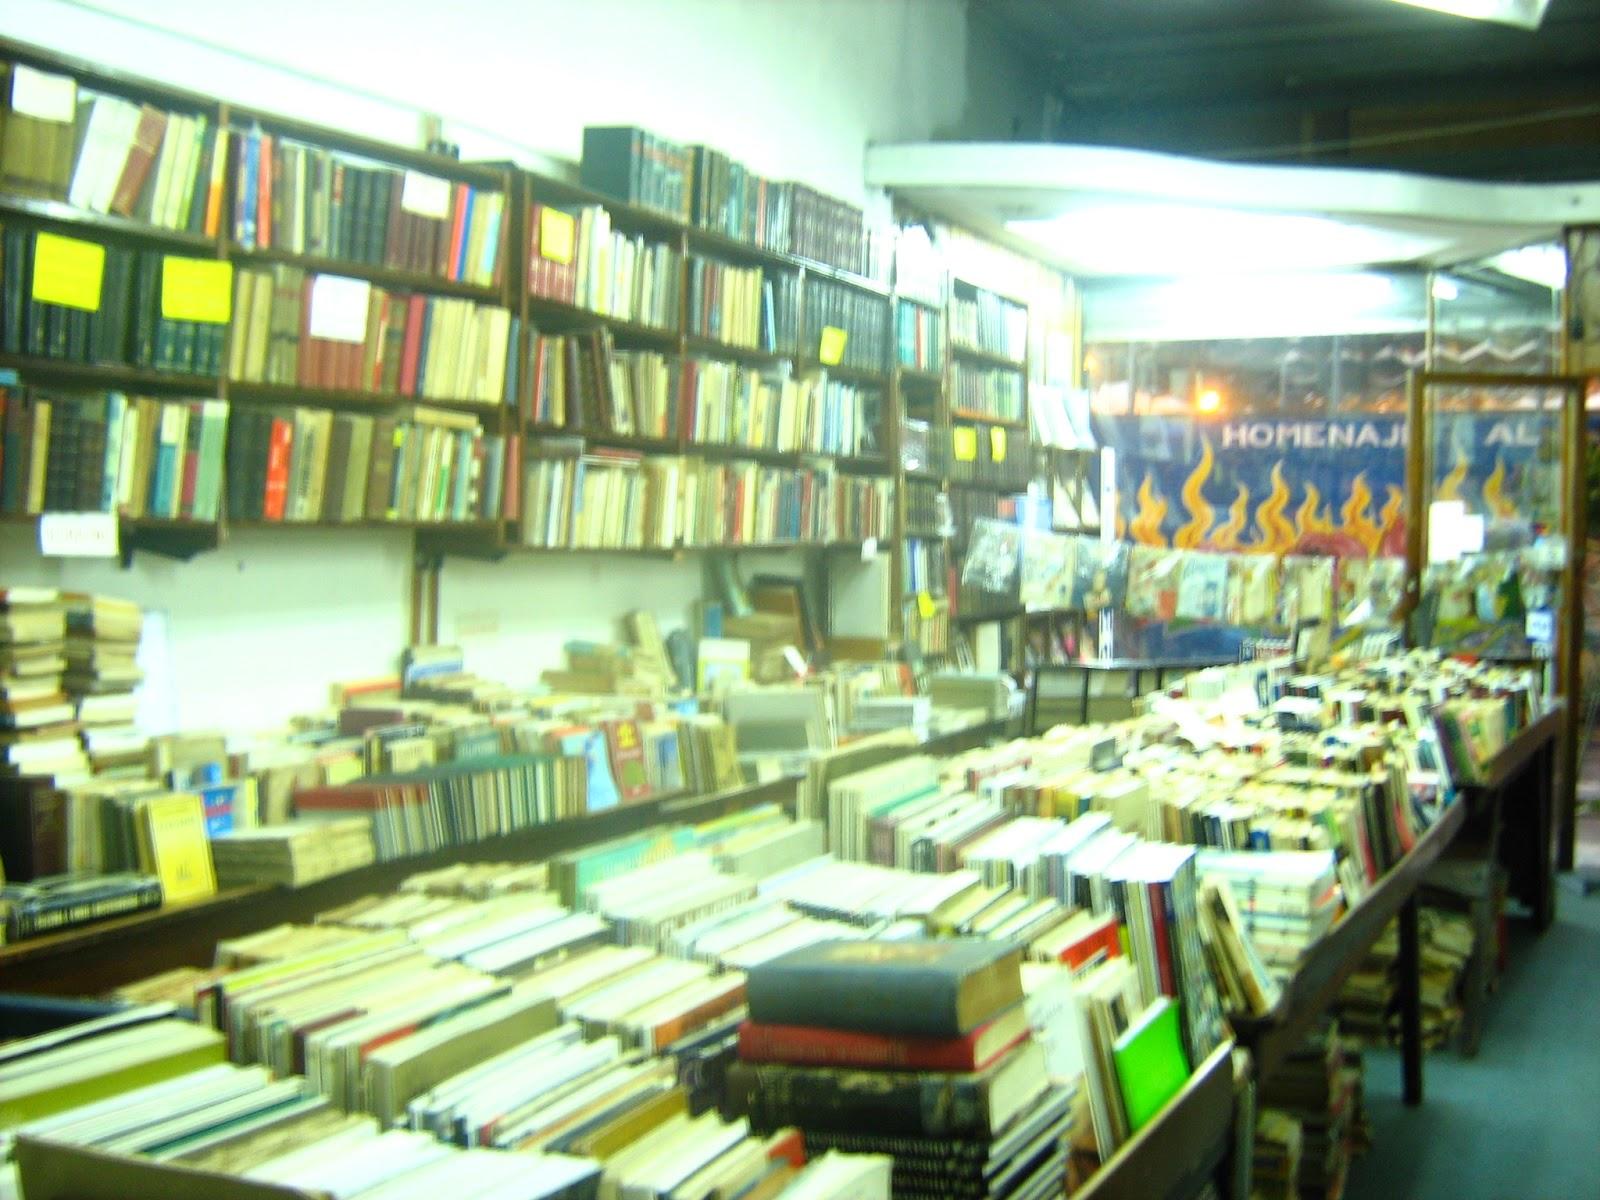 Viajar libros (6): Buenos Aires